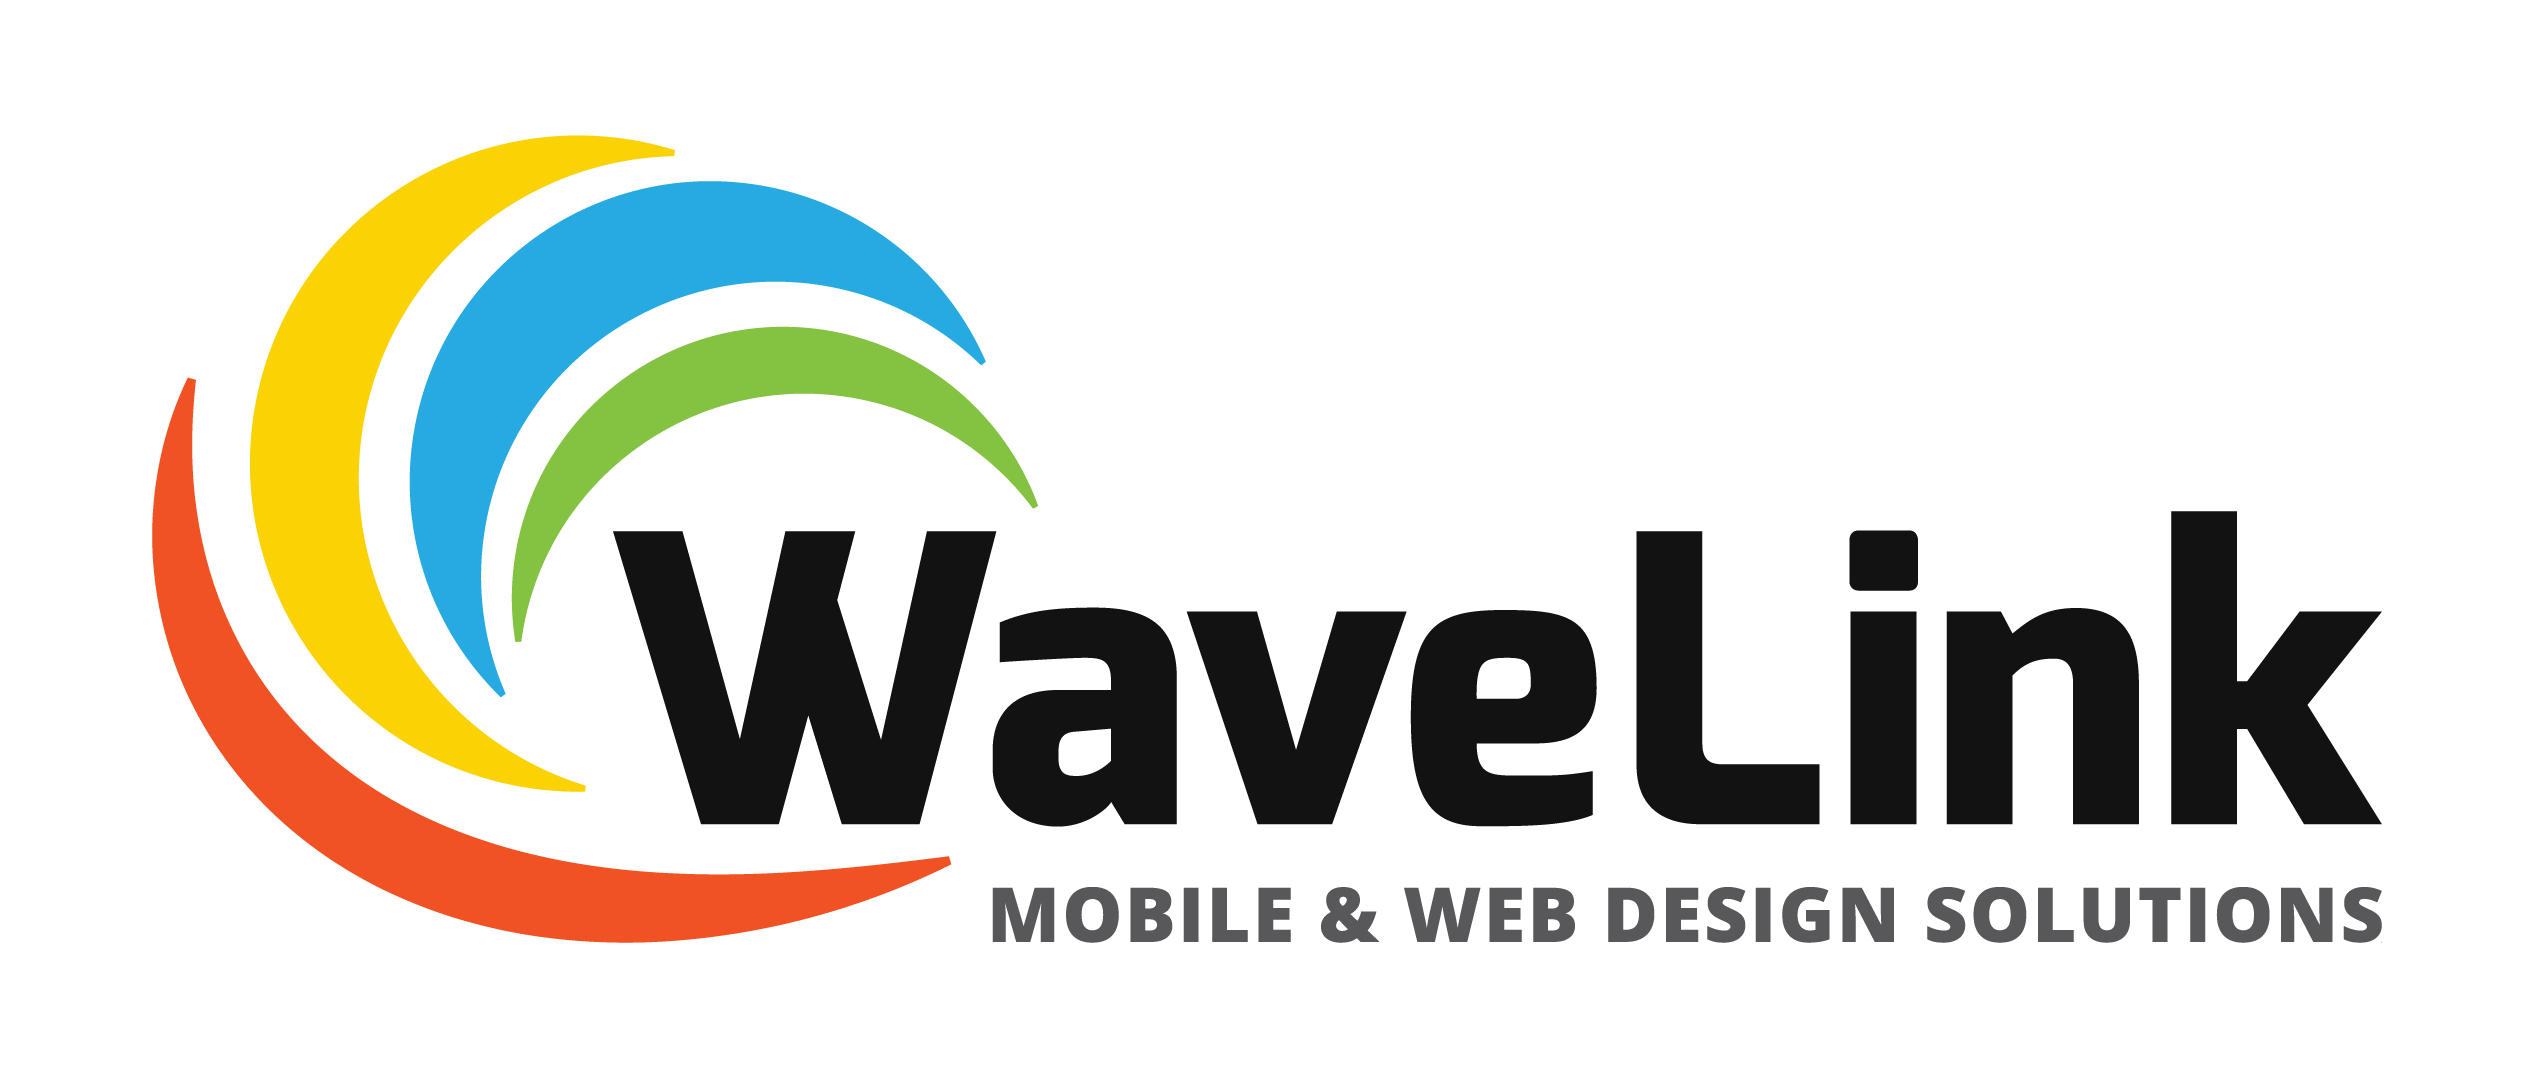 Wave Link, LLC